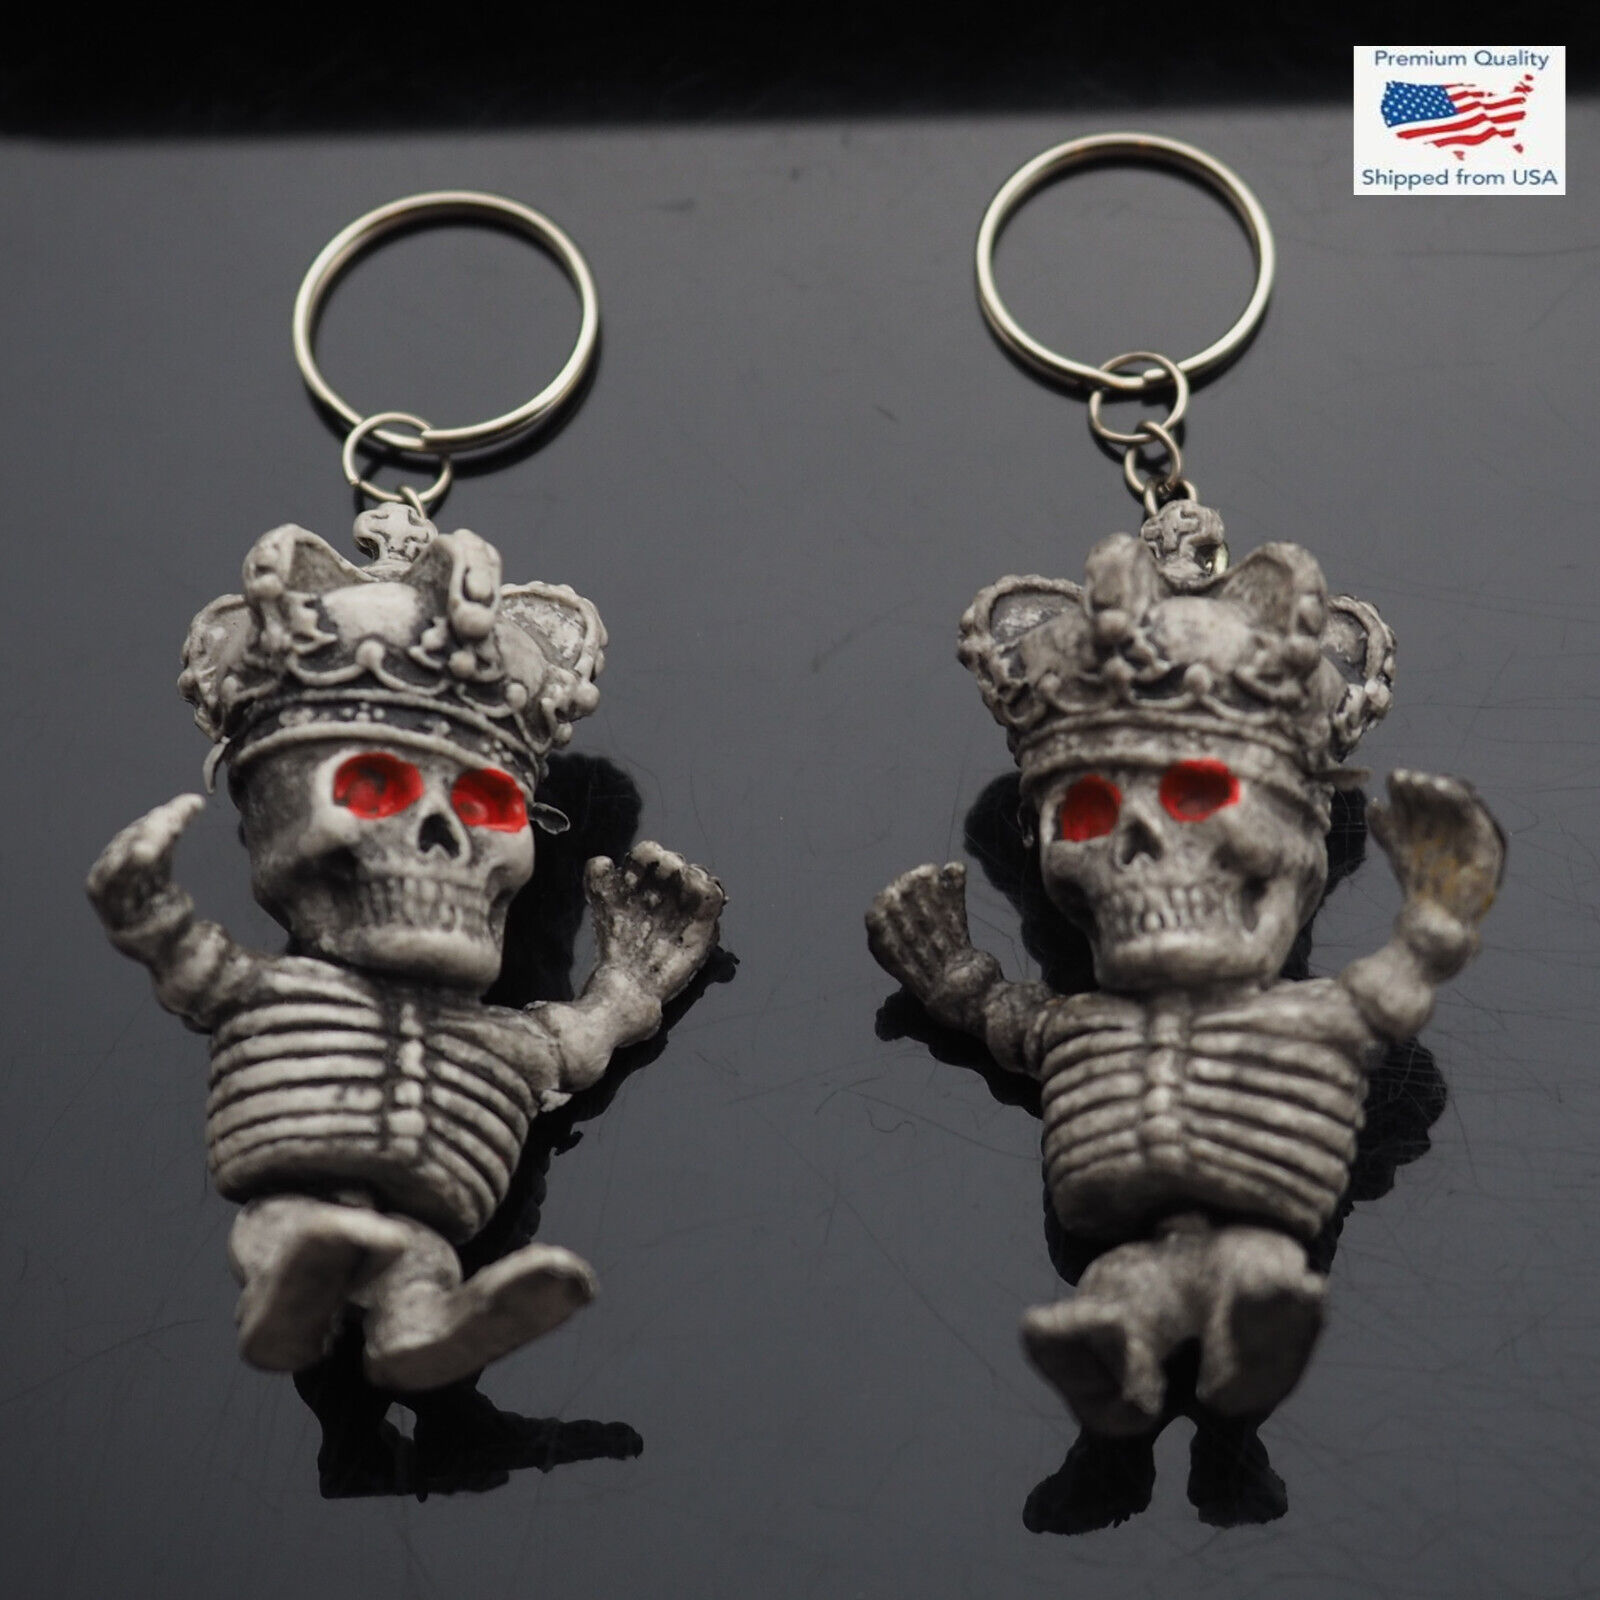 2pcs 3D Little King Skeleton Royal Crown Skull Charm Keychain Keyring Funny Gift